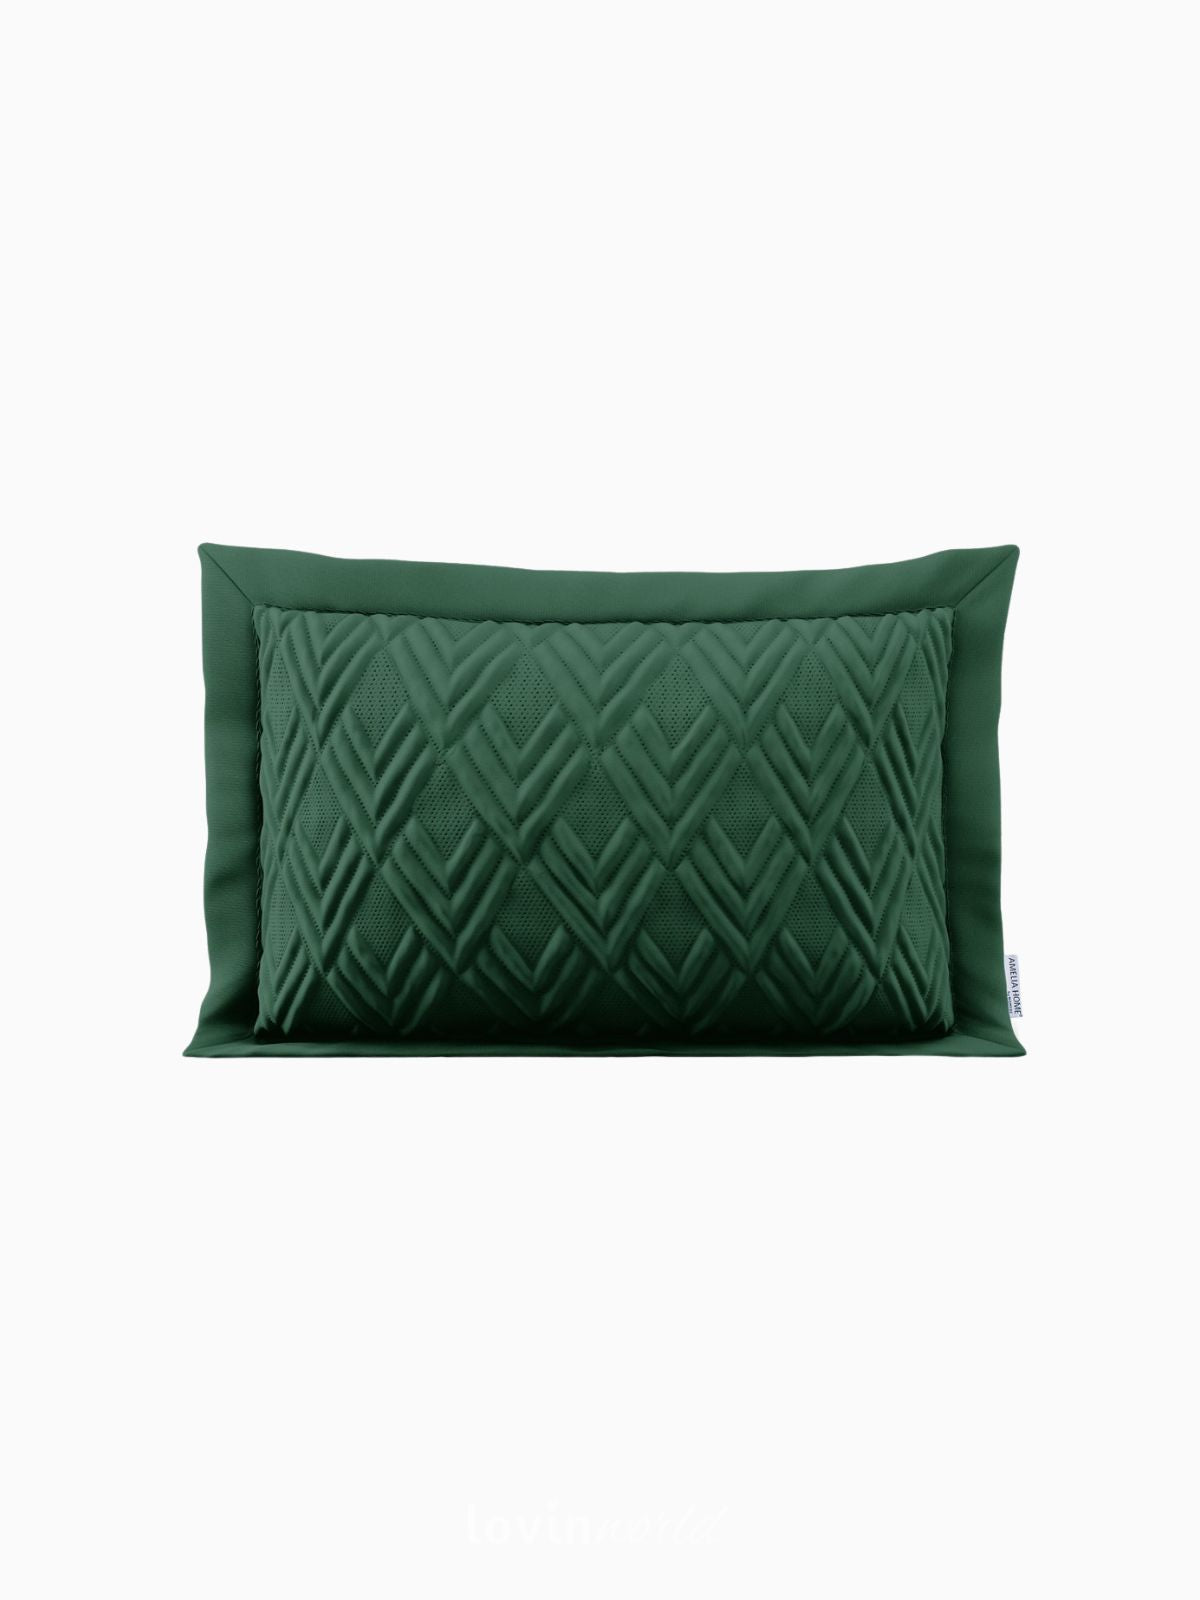 Cuscino decorativo Ophelia in colore verde 50x70 cm.-1